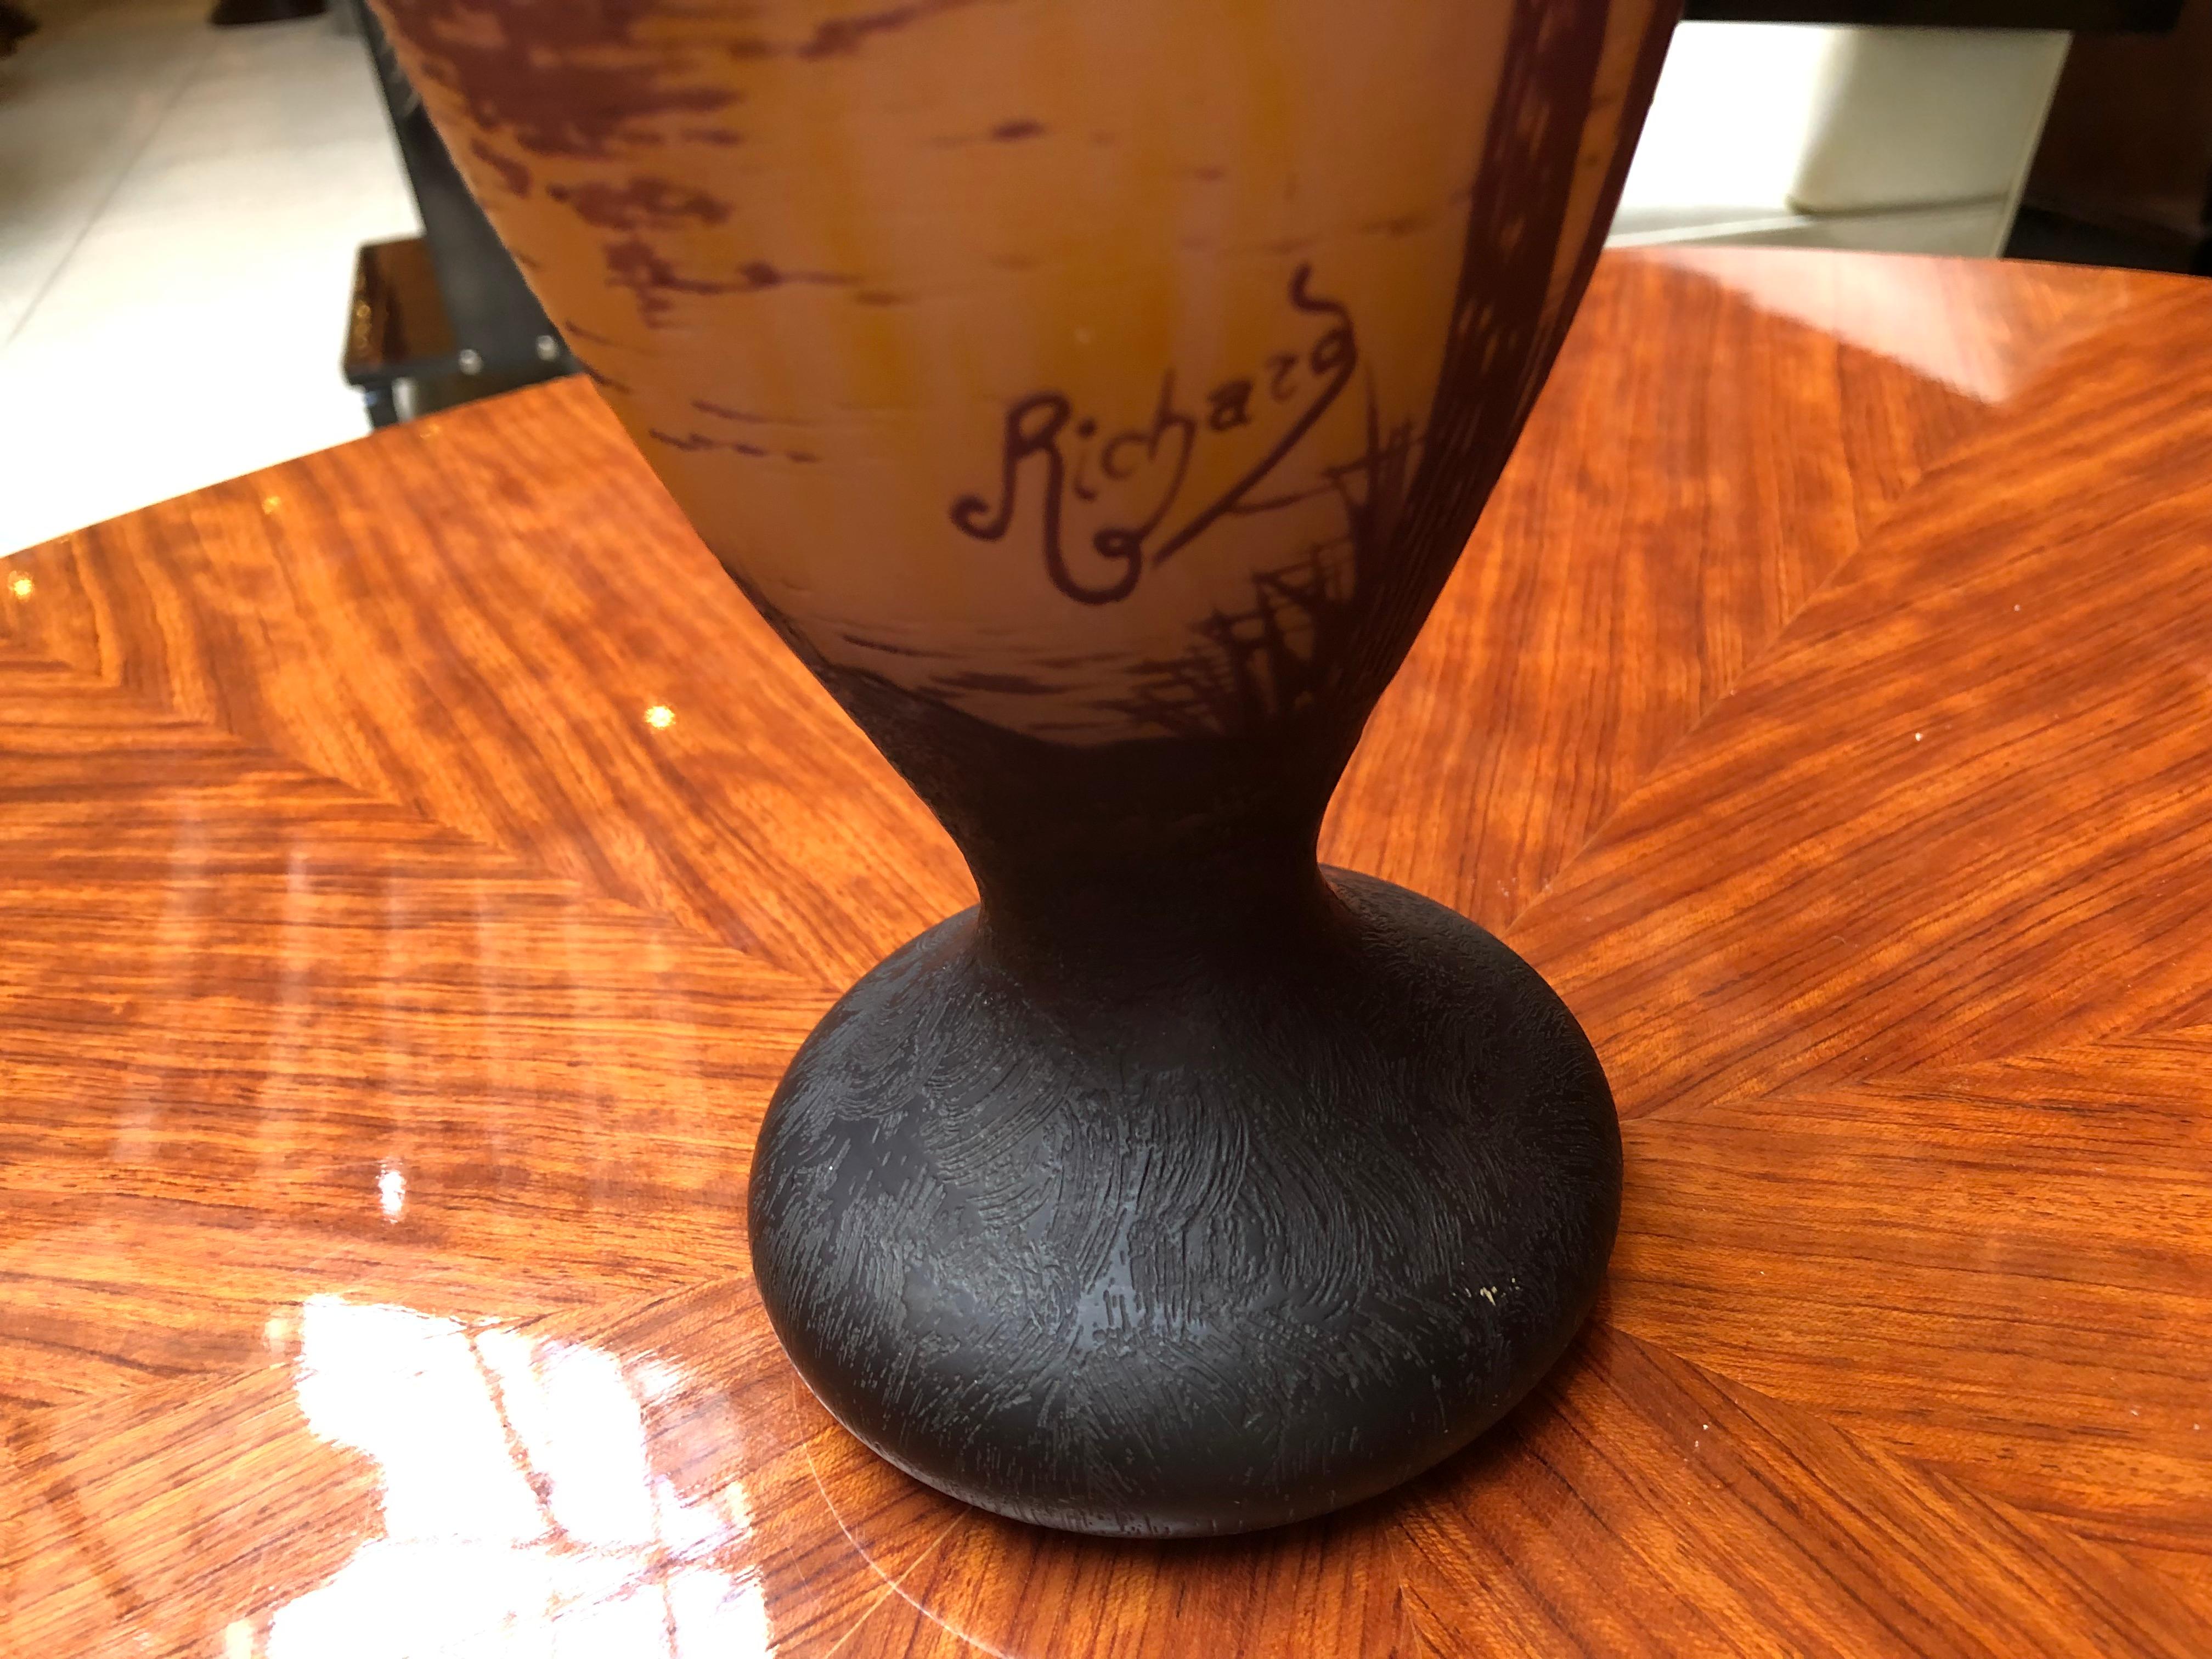 Austrian Vase Sign: Richard, Jugendstil, Art Nouveau, Liberty For Sale